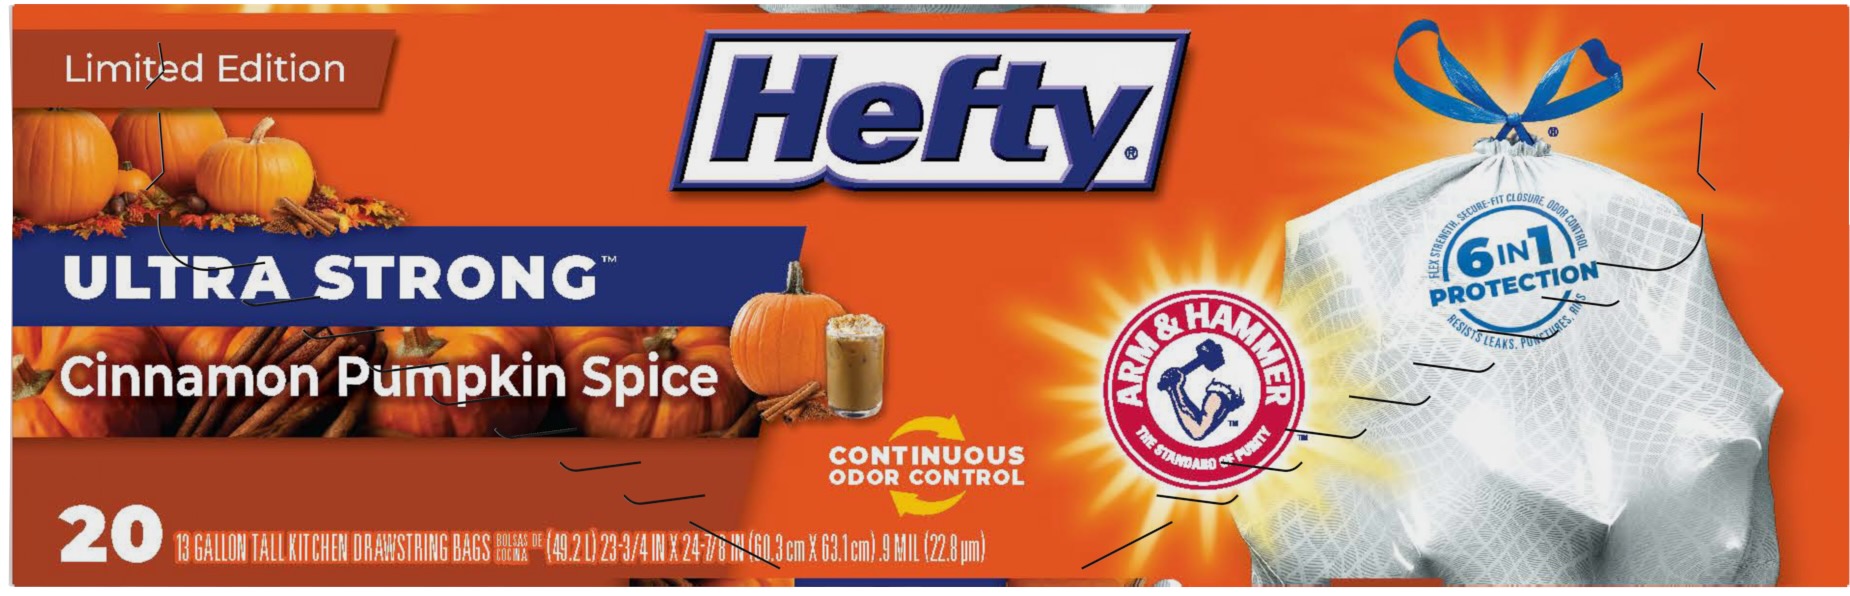 Hefty® Brings Back Fan-Favorite Hefty® Cinnamon Pumpkin Spice